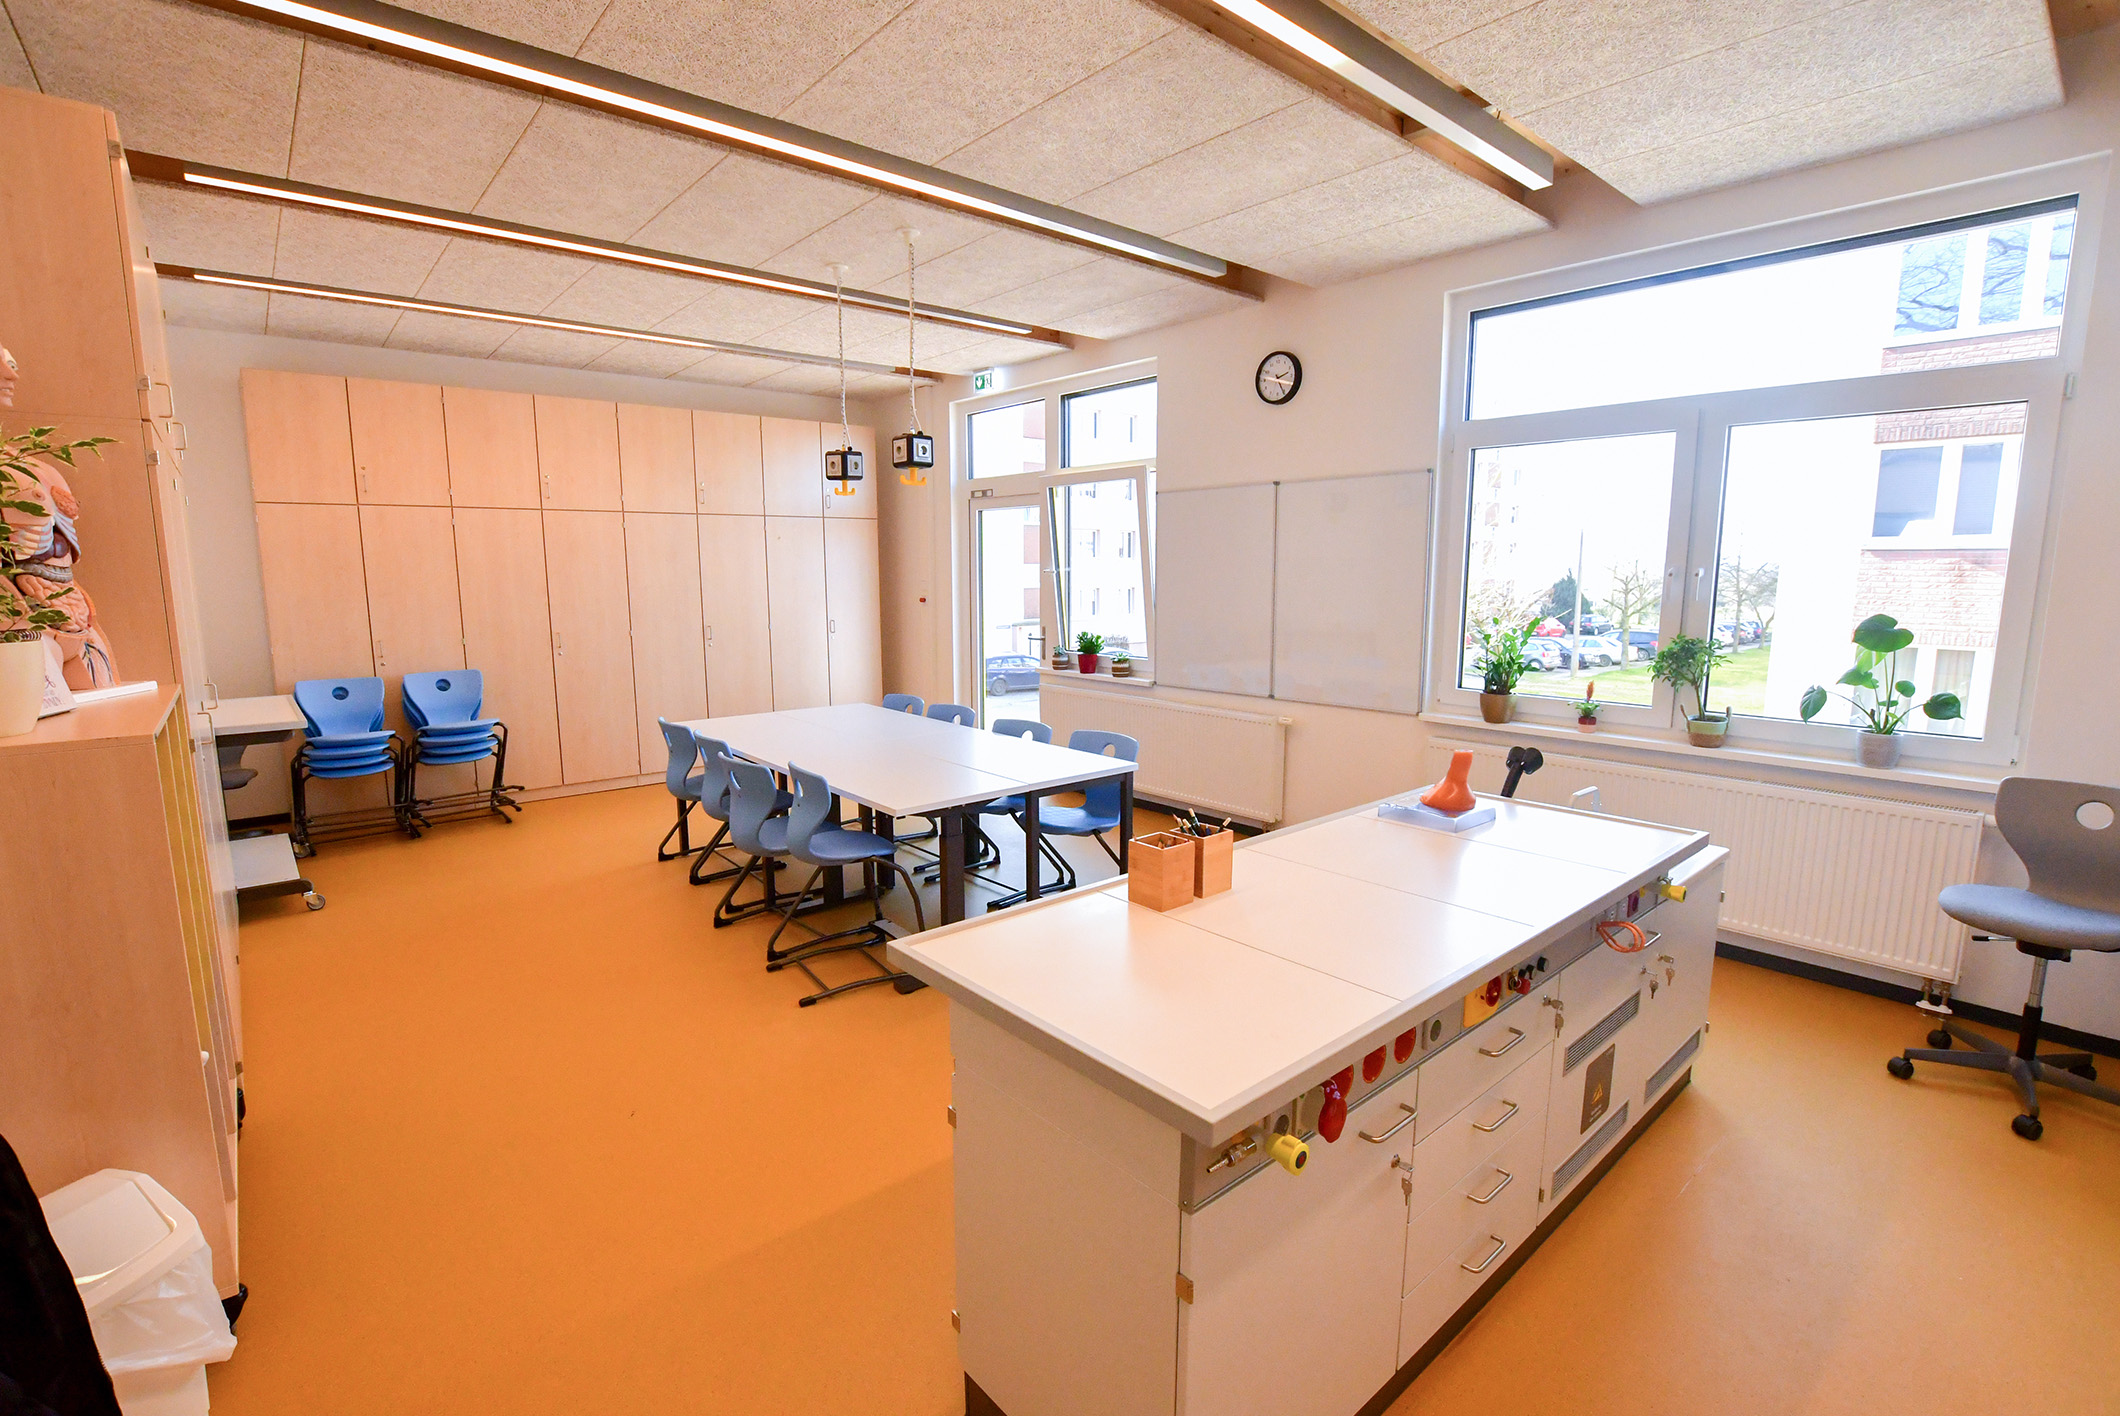 In der neuen Schule können sich die Schüler und Lehrer auf ein helles, freundliches Klassenzimmer freuen